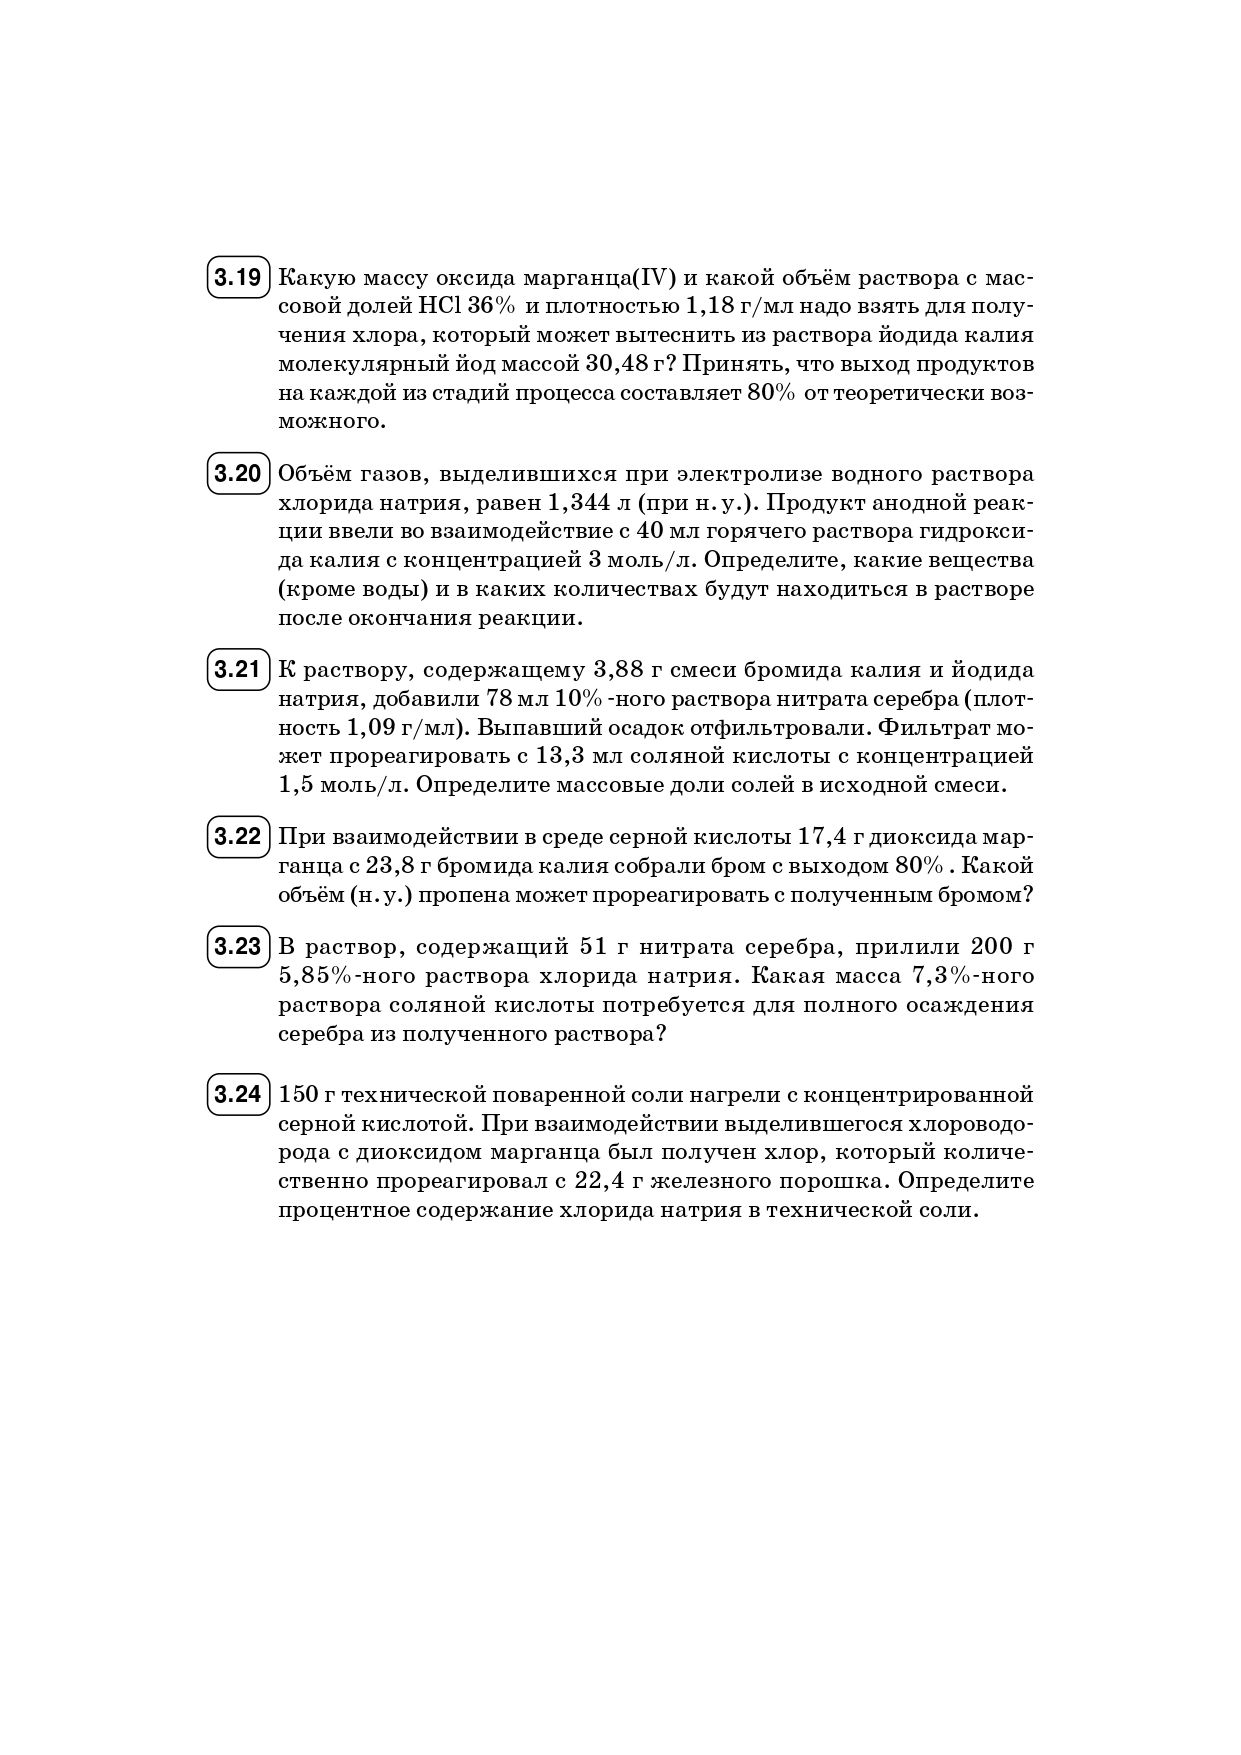 Химия. ЕГЭ. 10–11-е классы. Раздел «Неорганическая химия». Задания и решения. Изд. 6-е, перераб.